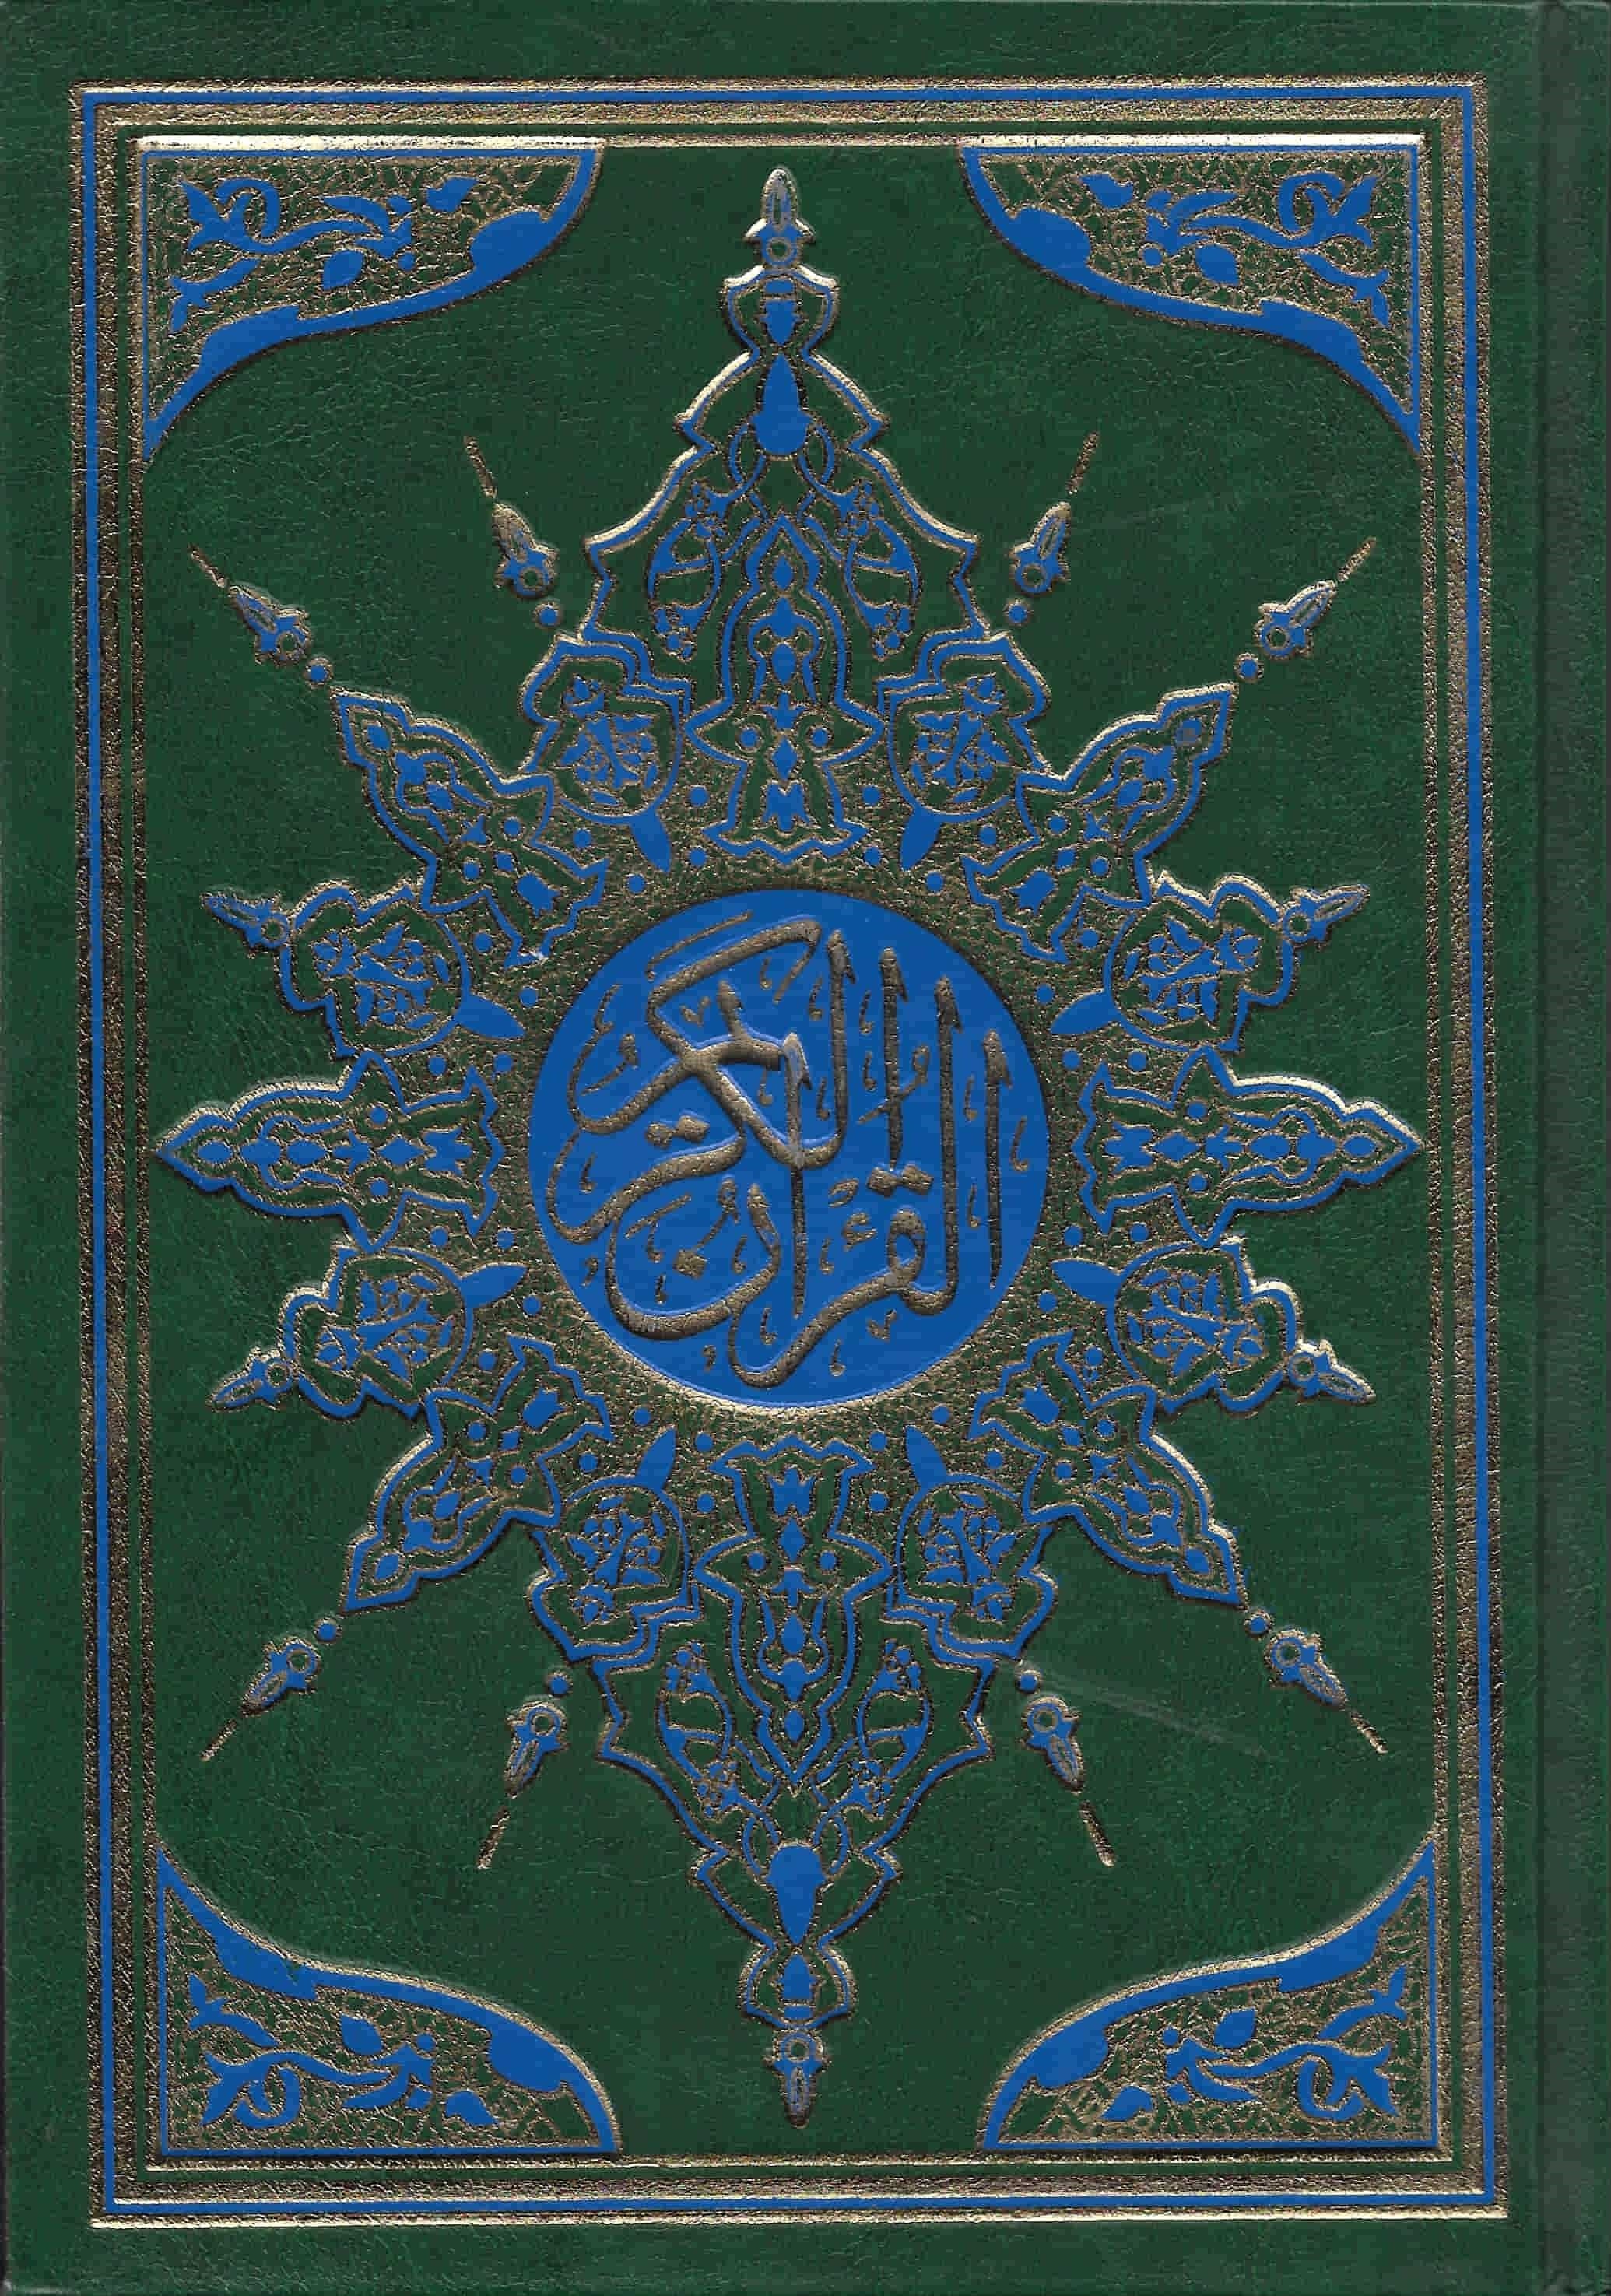 القرآن الكريم بالرسم العثماني كتب إسلامية السحار للطباعة أخضر 17*24